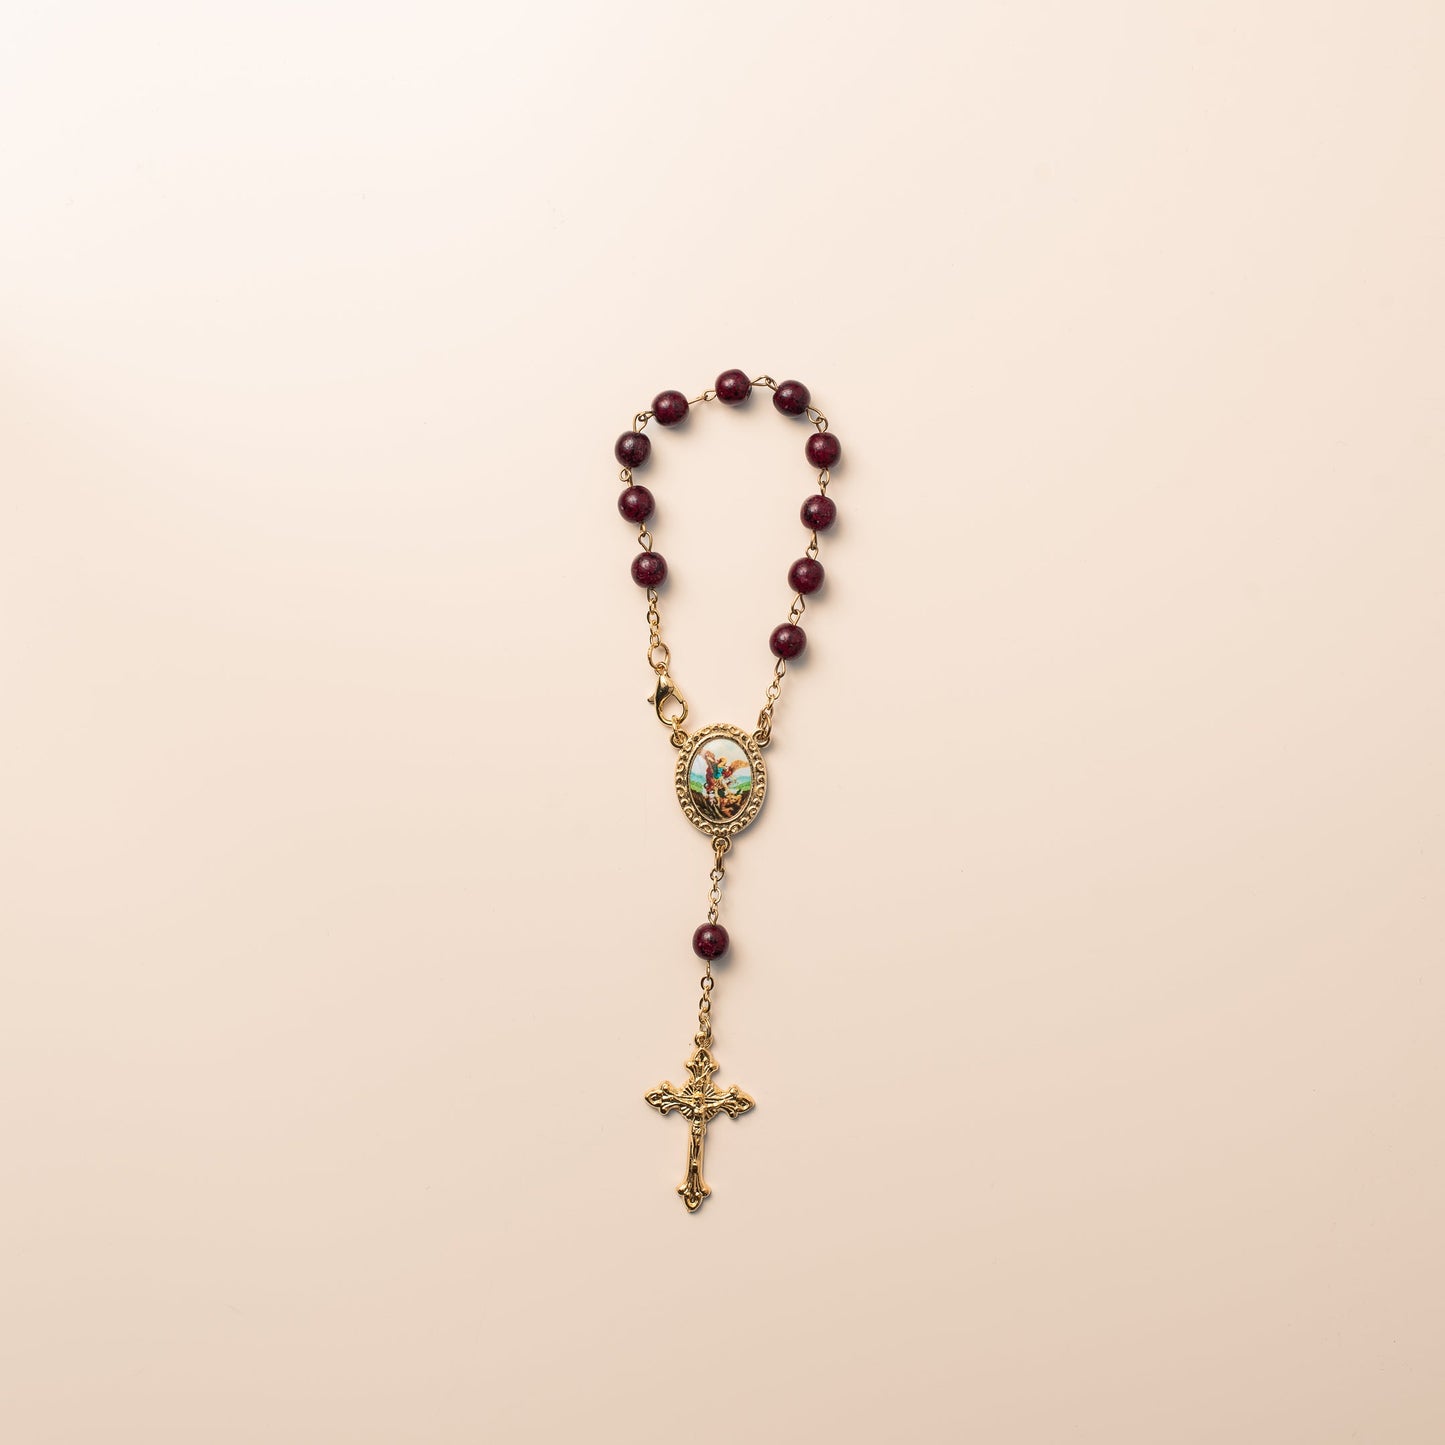 Decade auto rosary